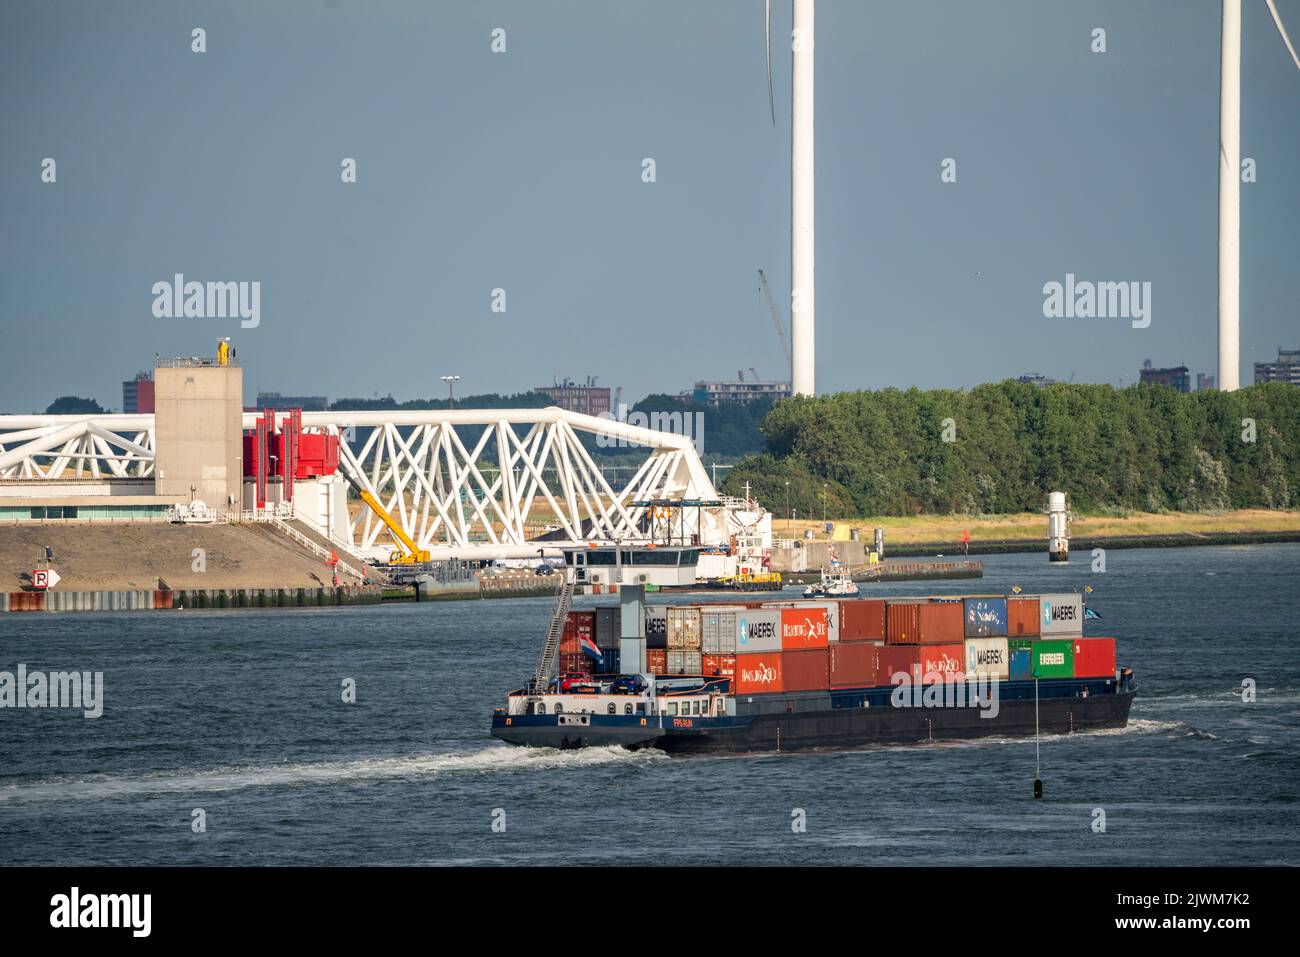 Schiffsverkehr auf der Maas, Höhe Hoek van Holland, Binnenfrachtschiff, Containerfrachter, vor dem Maeslantkering Sturmflutwehr bei t Stockfoto